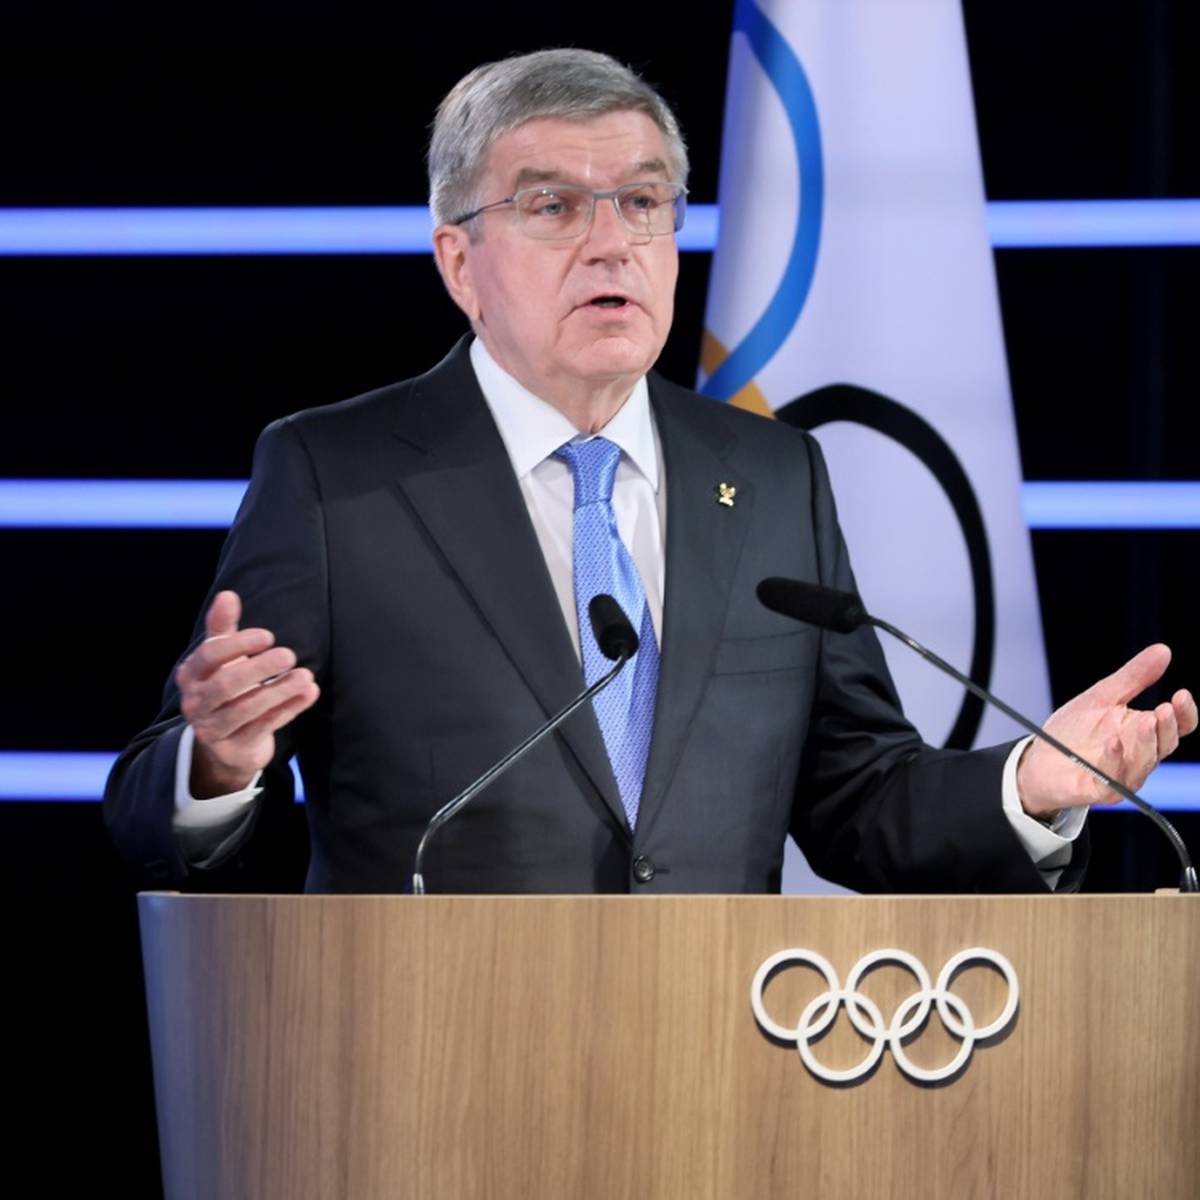 Thomas Bach spürt im Deutschen Olympischen Sportbund (DOSB) ein "neues Feuer und eine neue Begeisterung" für Olympische Spiele in Deutschland.